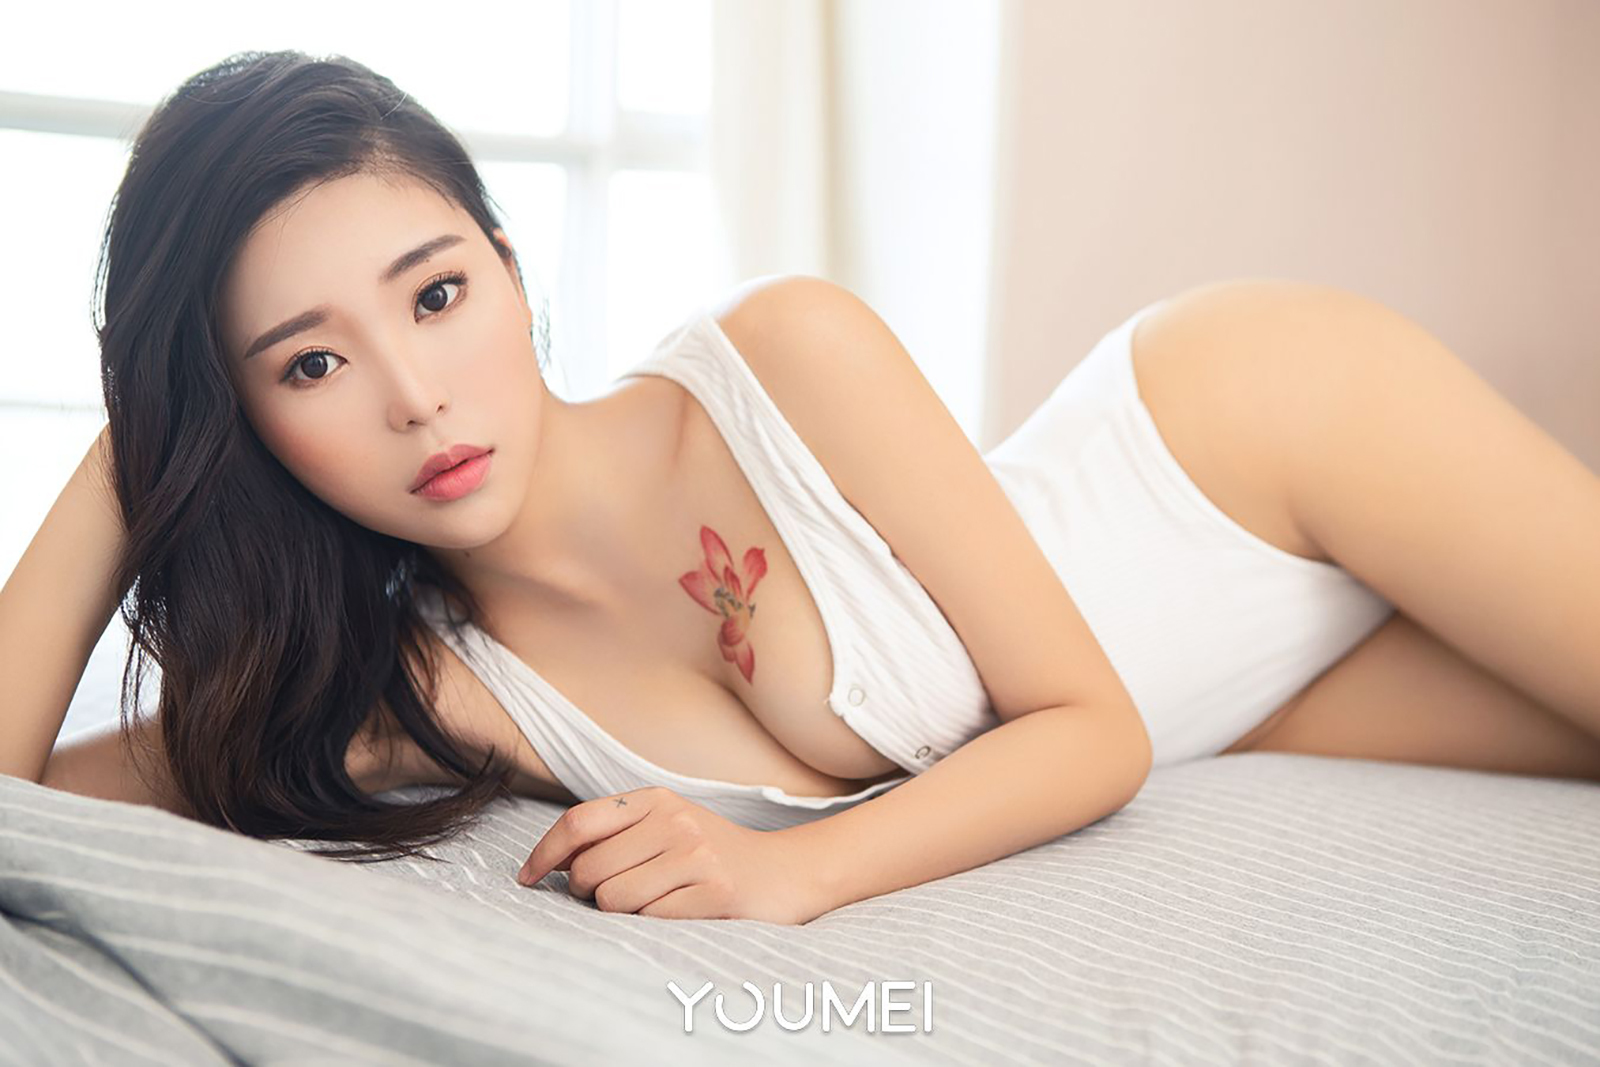 [Youmei Youmei] no.064, October 09, 2018